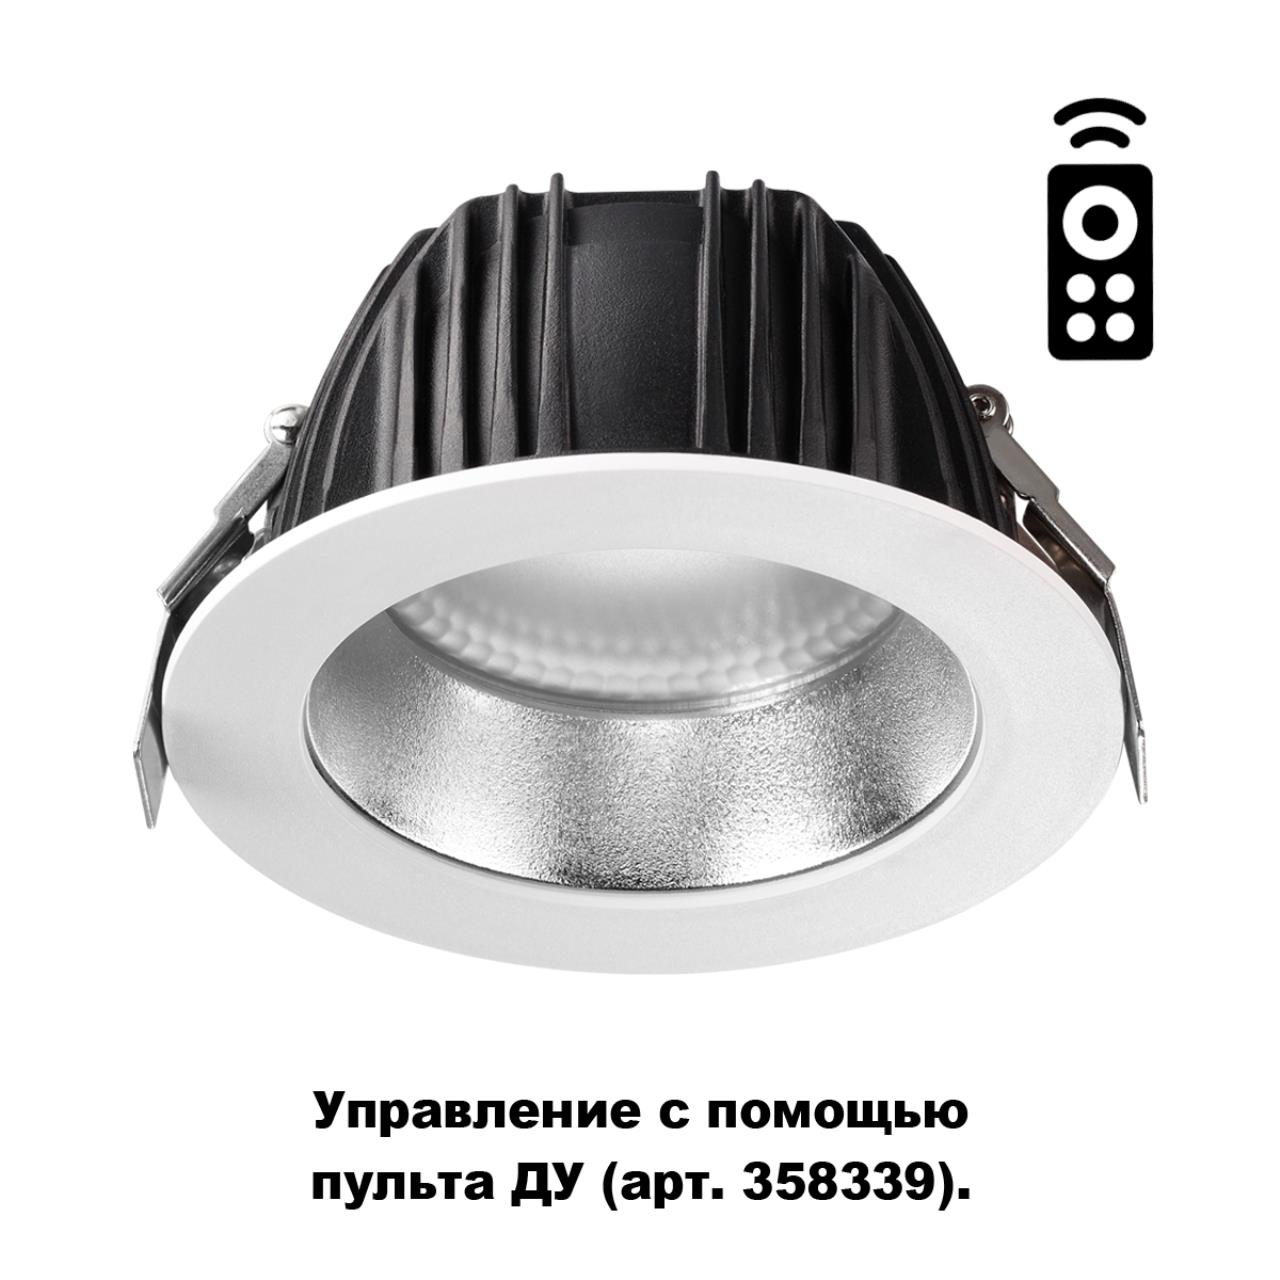 Встраиваемый диммируемый светильник на пульте управления со сменой цветовой температуры 220-240В GESTION 93